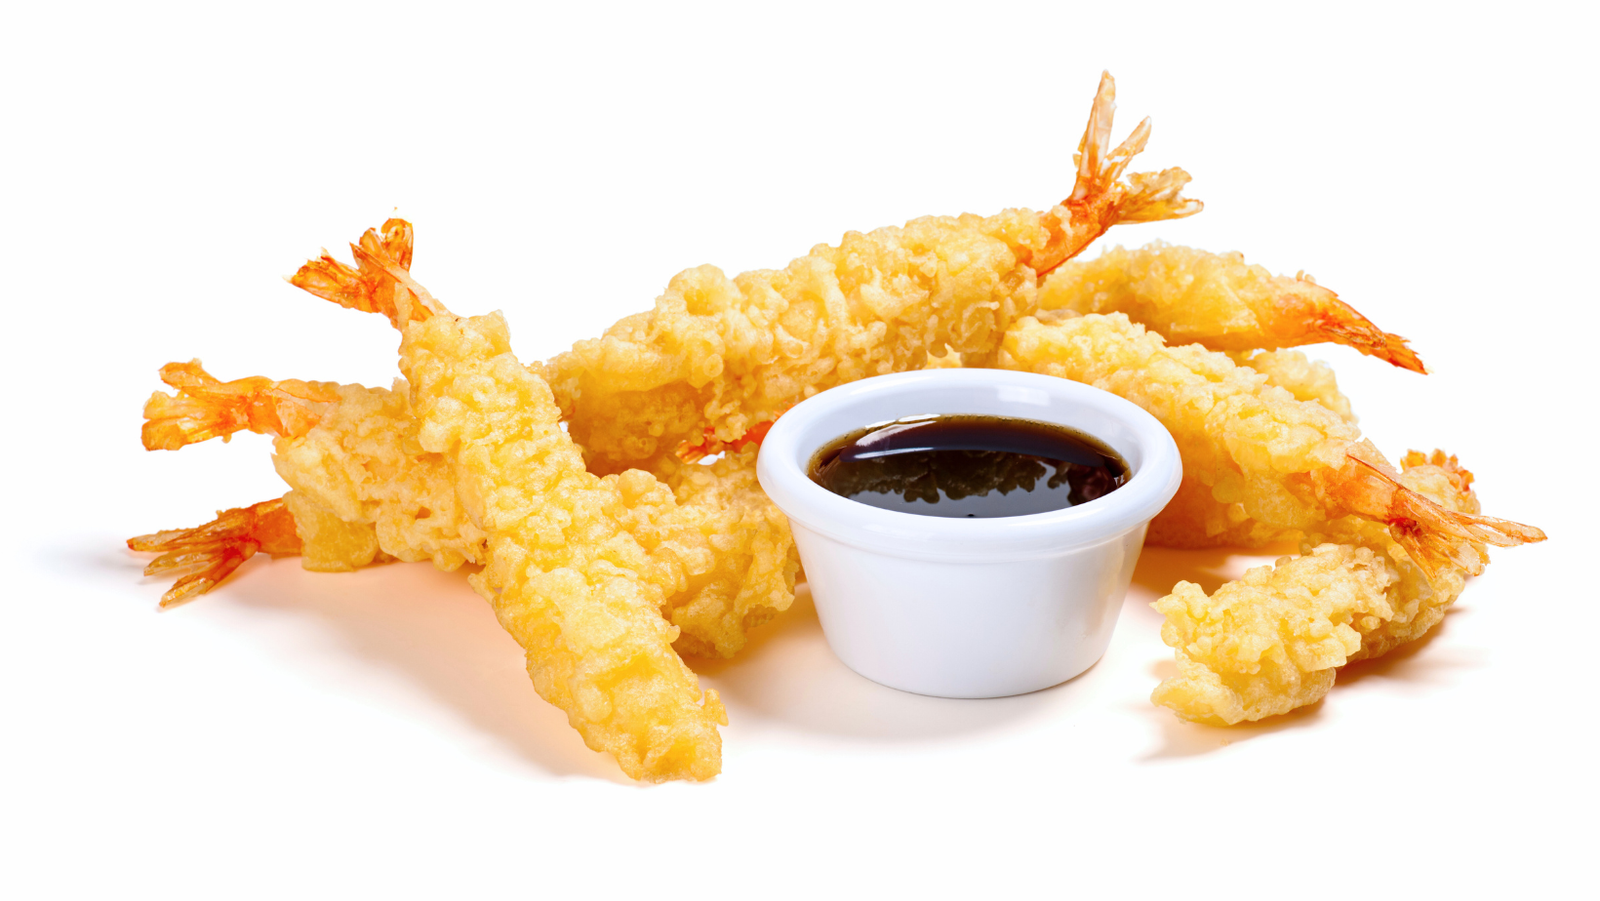 tempura with a dip sauce